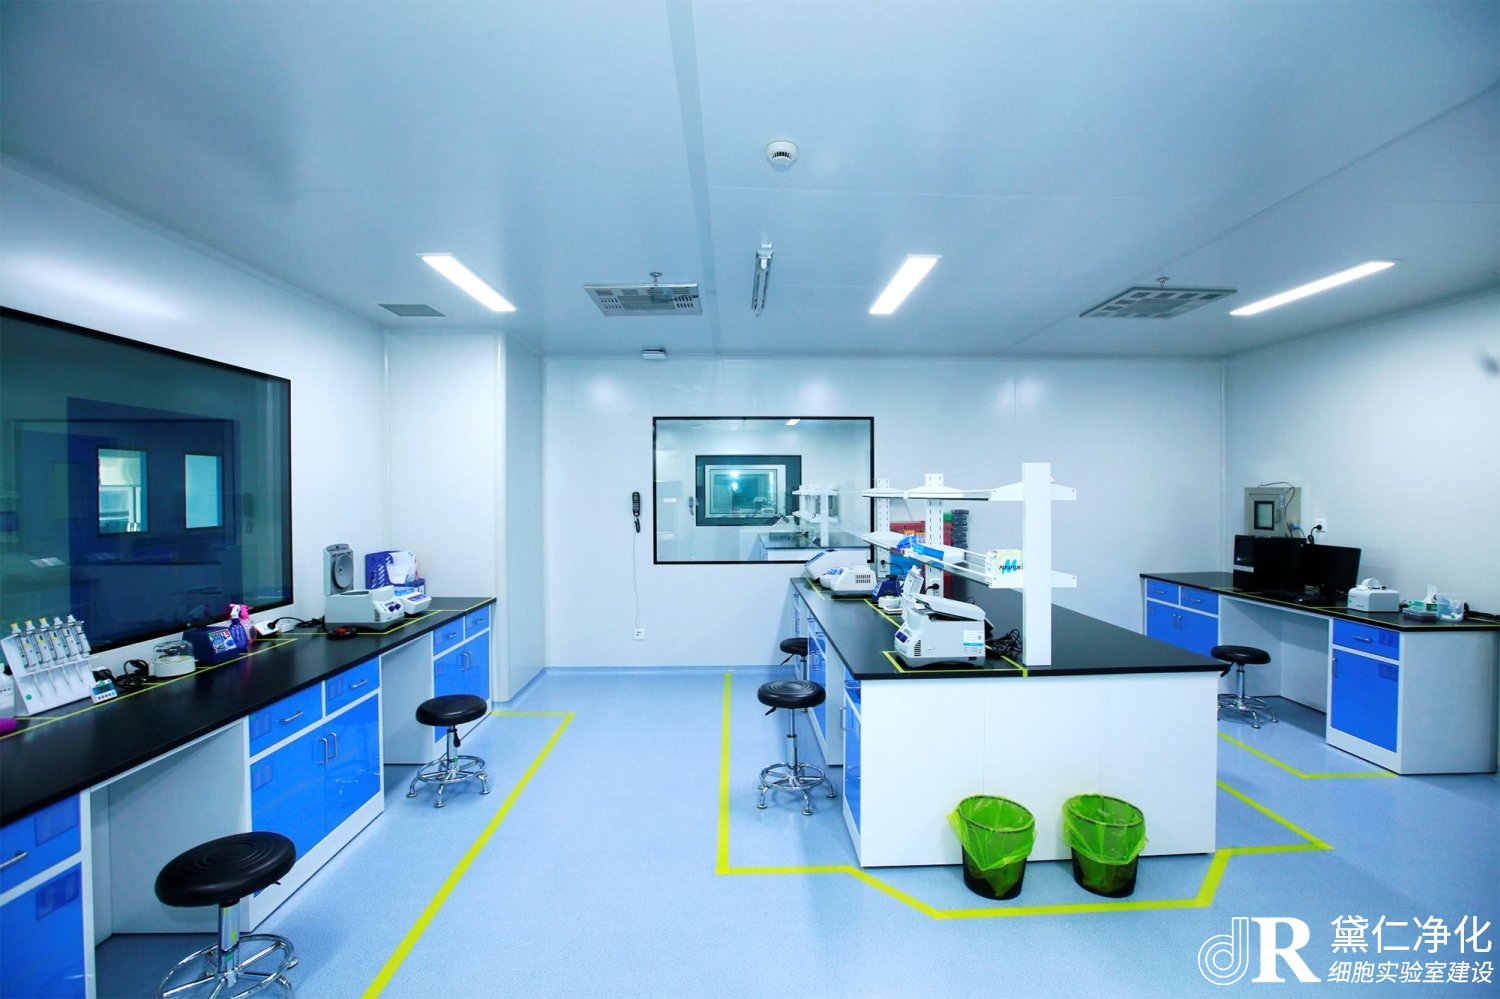 上海醫學檢驗所PCR實驗室案例